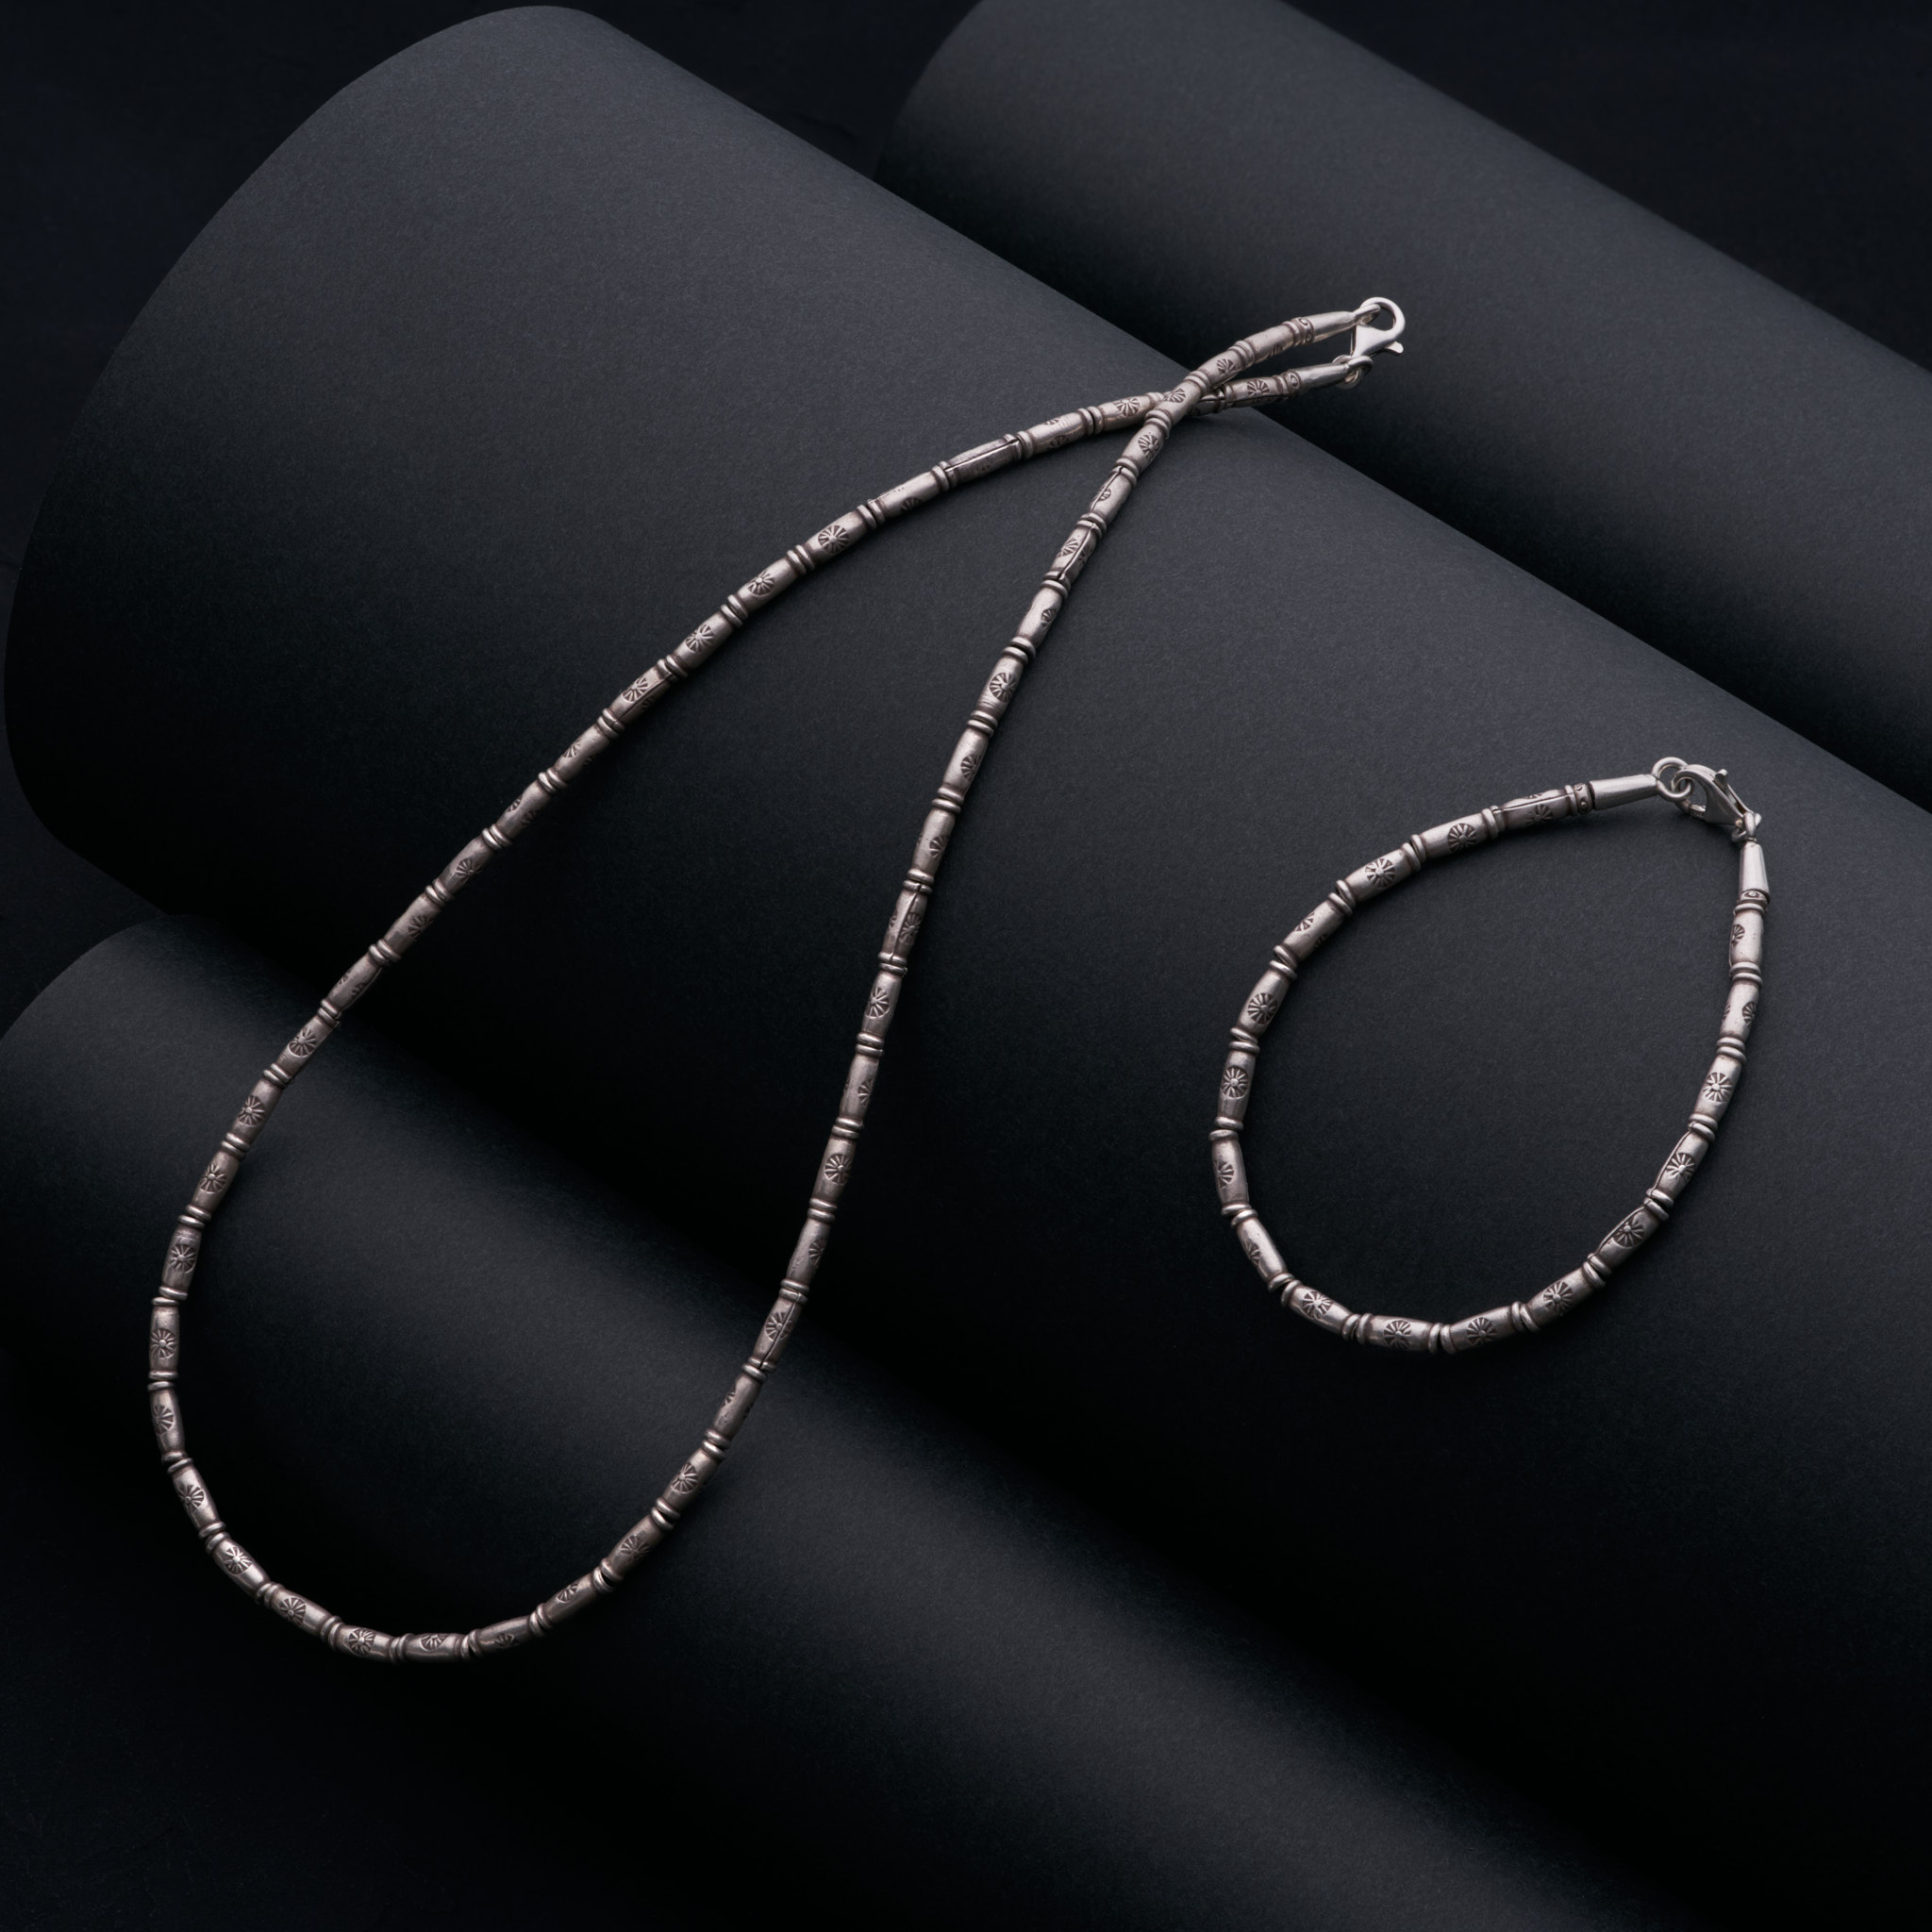 カレン族シルバー ビーズ 3.5mm幅 ネックレス シンプル 民族文様 SV950 a01-30 - クロマニヨン